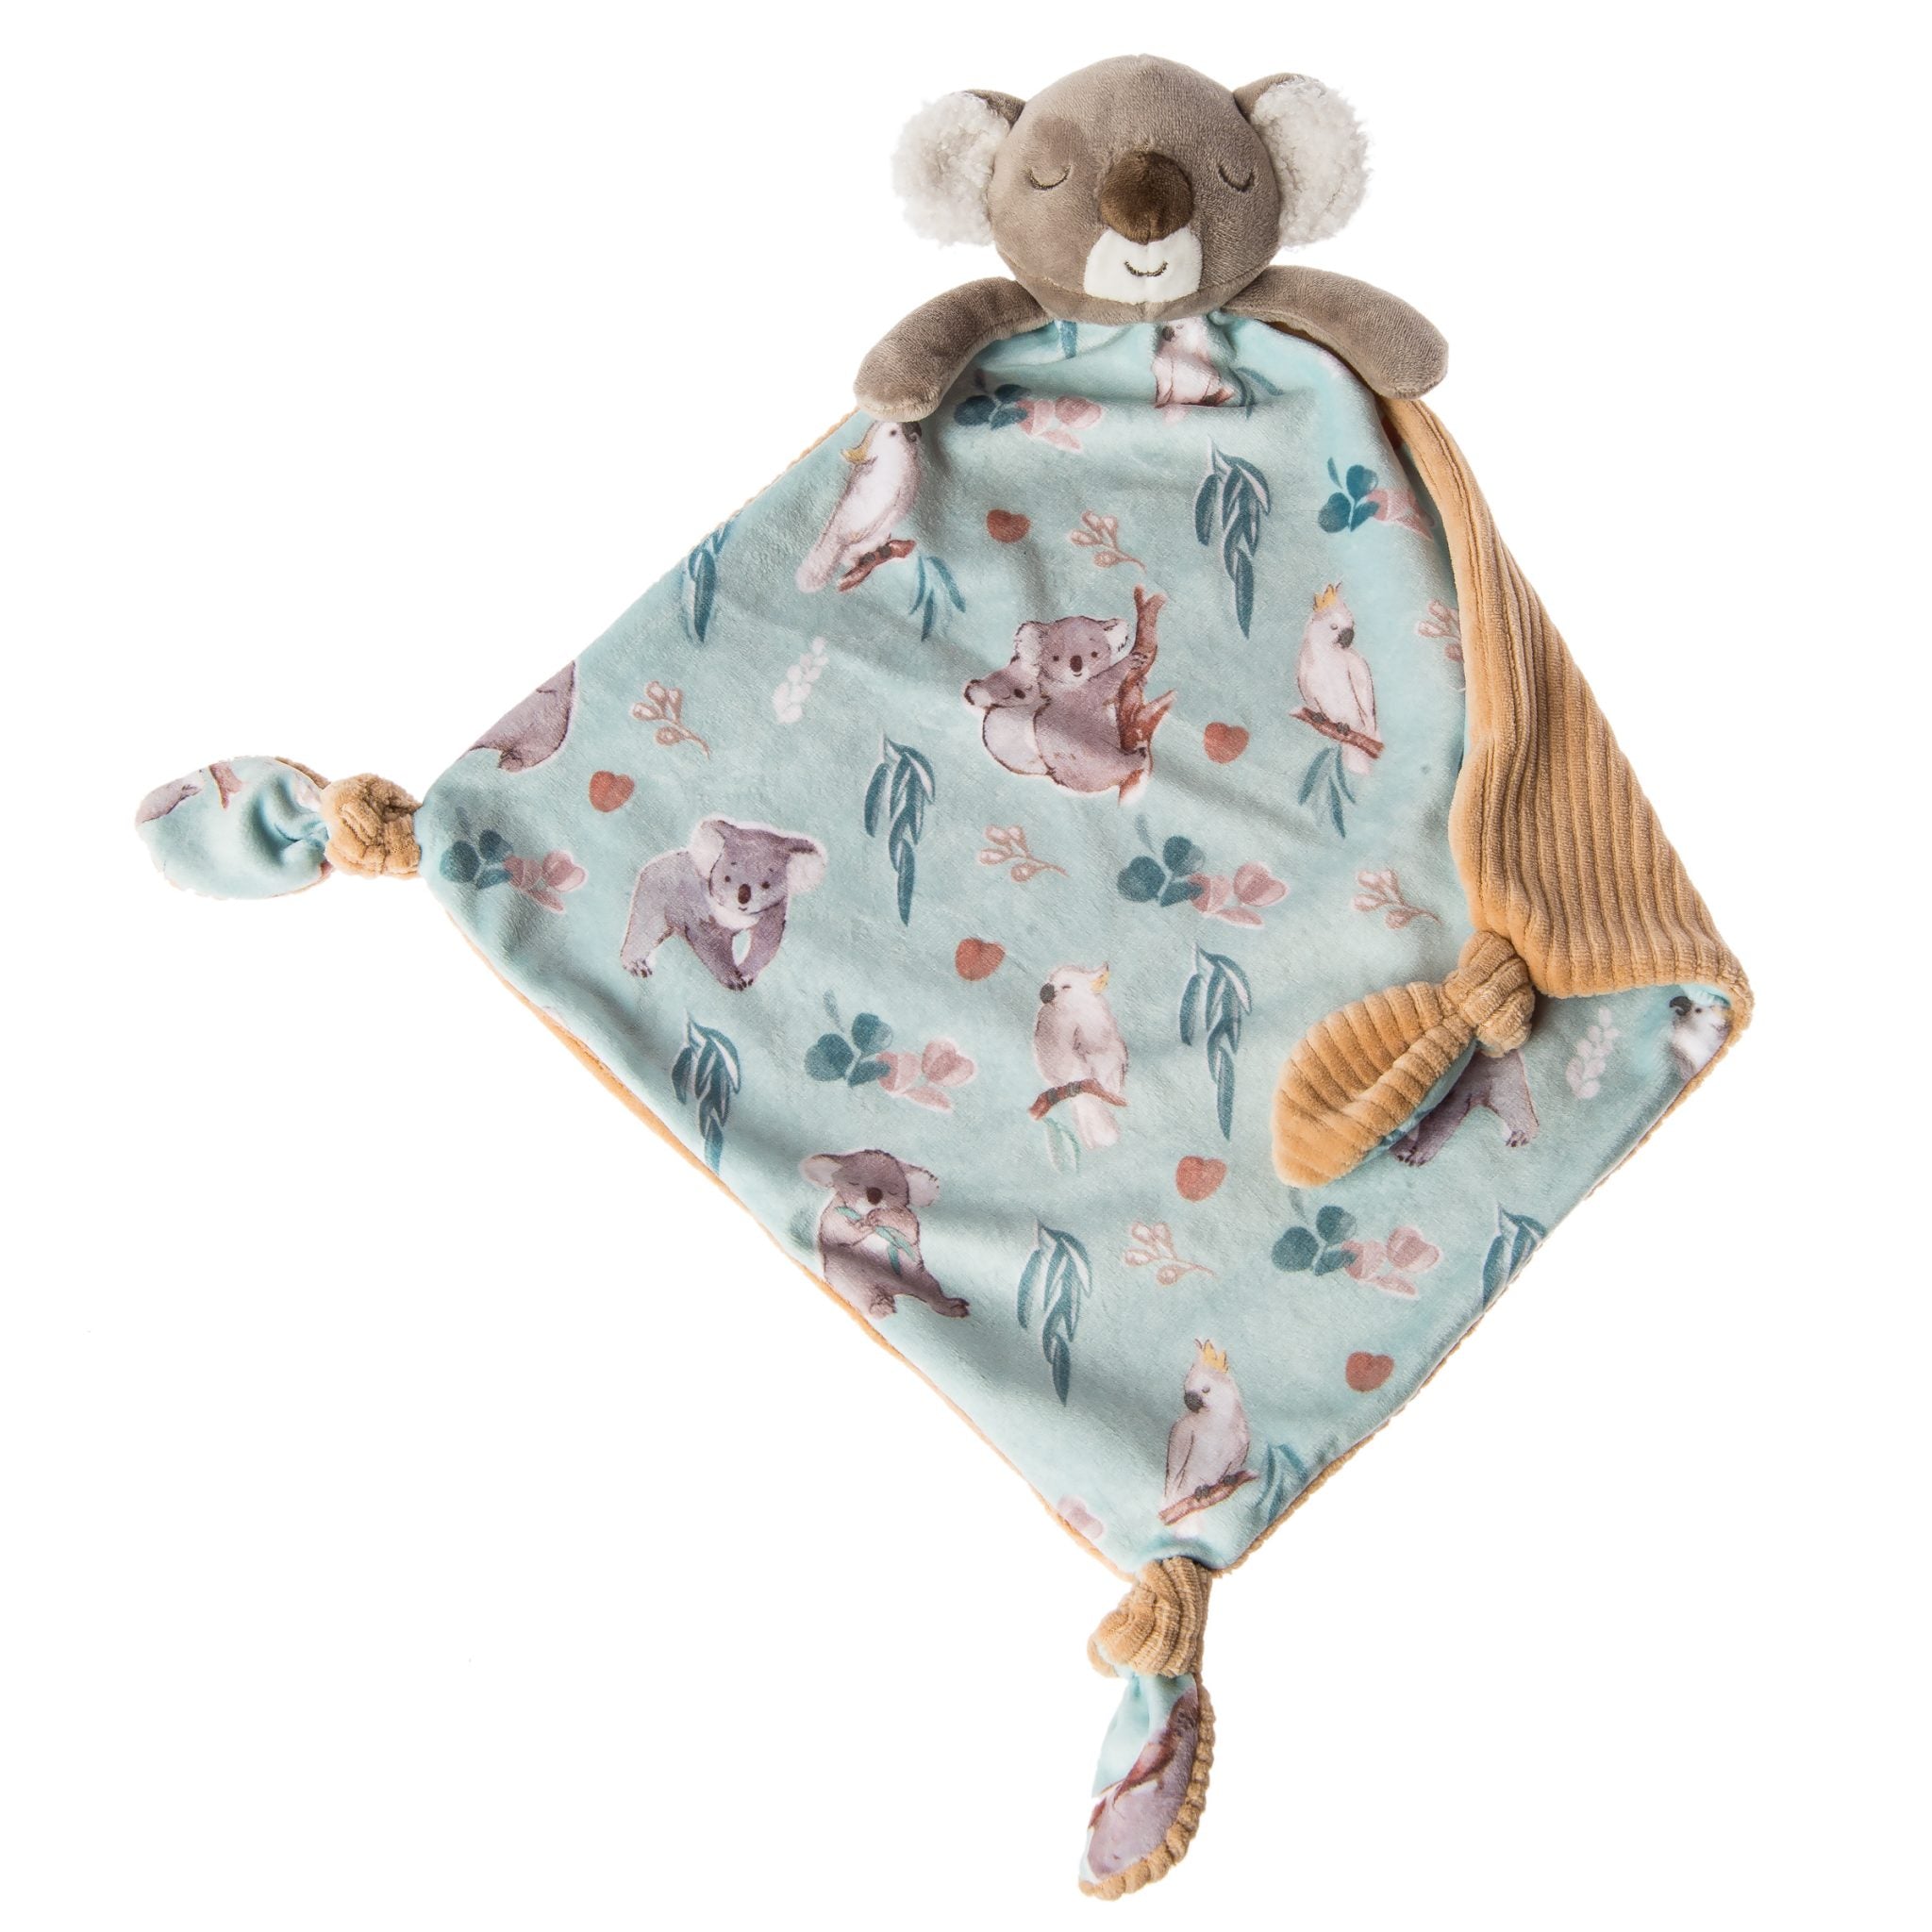 Little Knottie Down Under Koala Blanket – 10×10-Inches